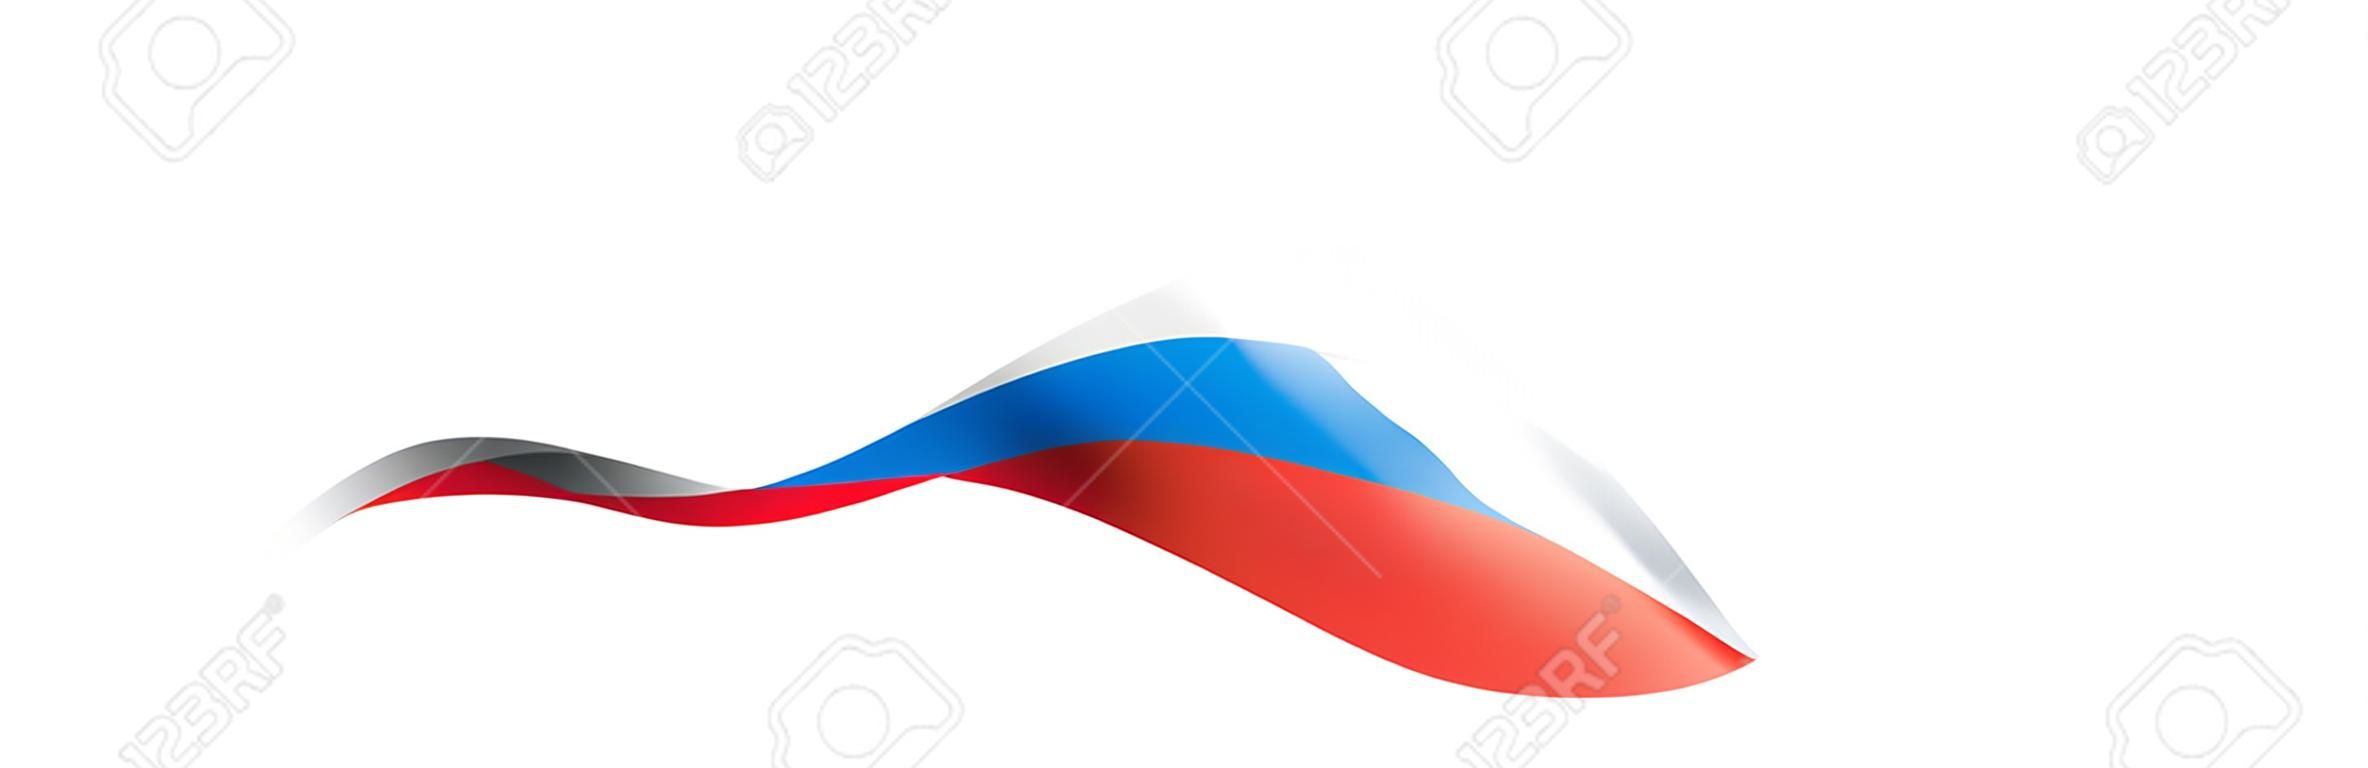 Bandera de Rusia, ilustración vectorial sobre fondo blanco.